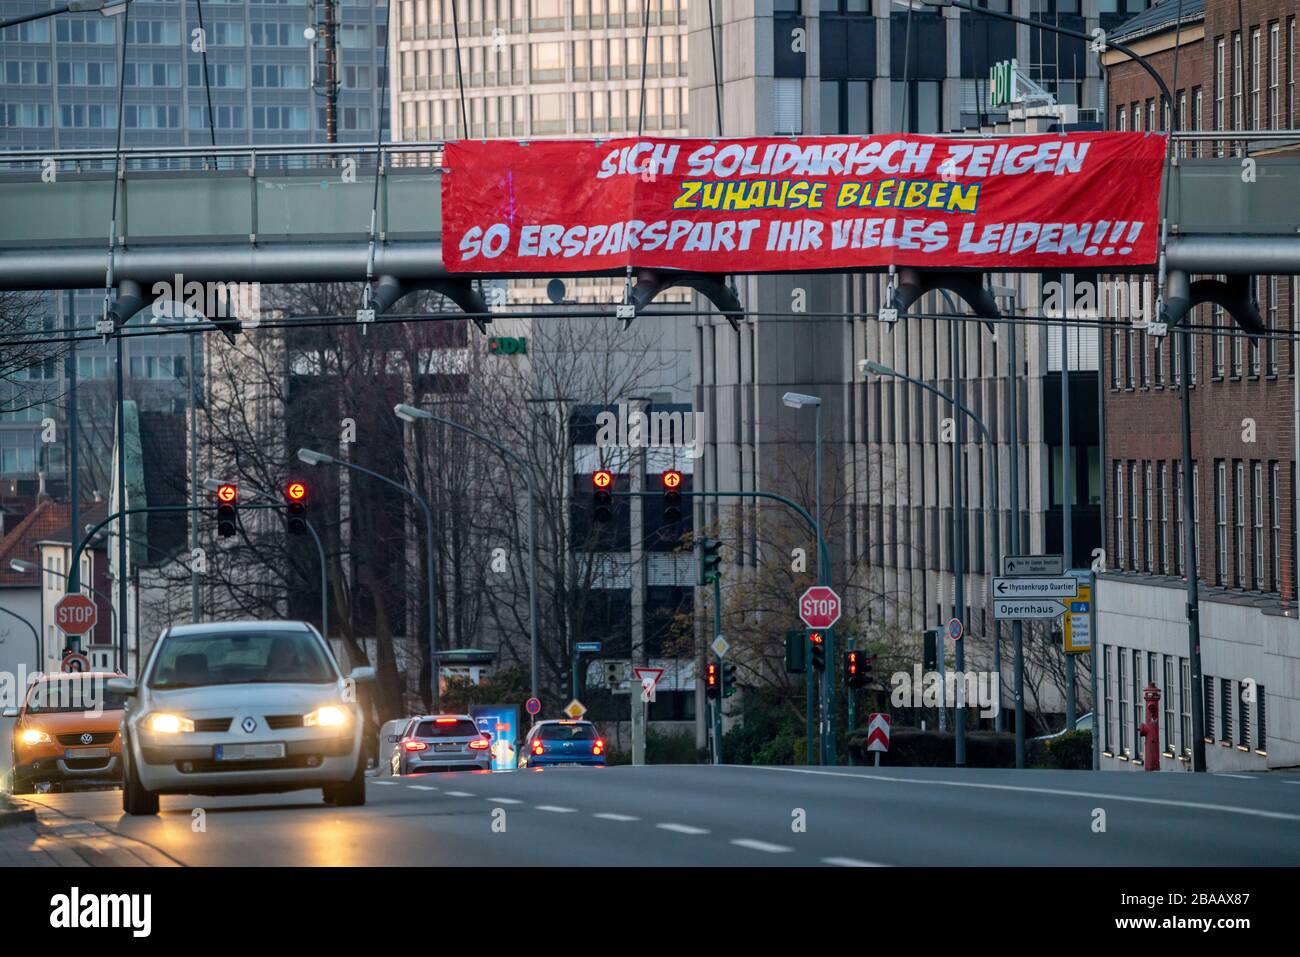 Grosses Banner ruft auf, zu Hause zu bleiben, fordert Solidarität, Alfredstrasse, B224, Auswirkungen der Coronavirus Pandemie in Deutschland, Essen, Foto de stock